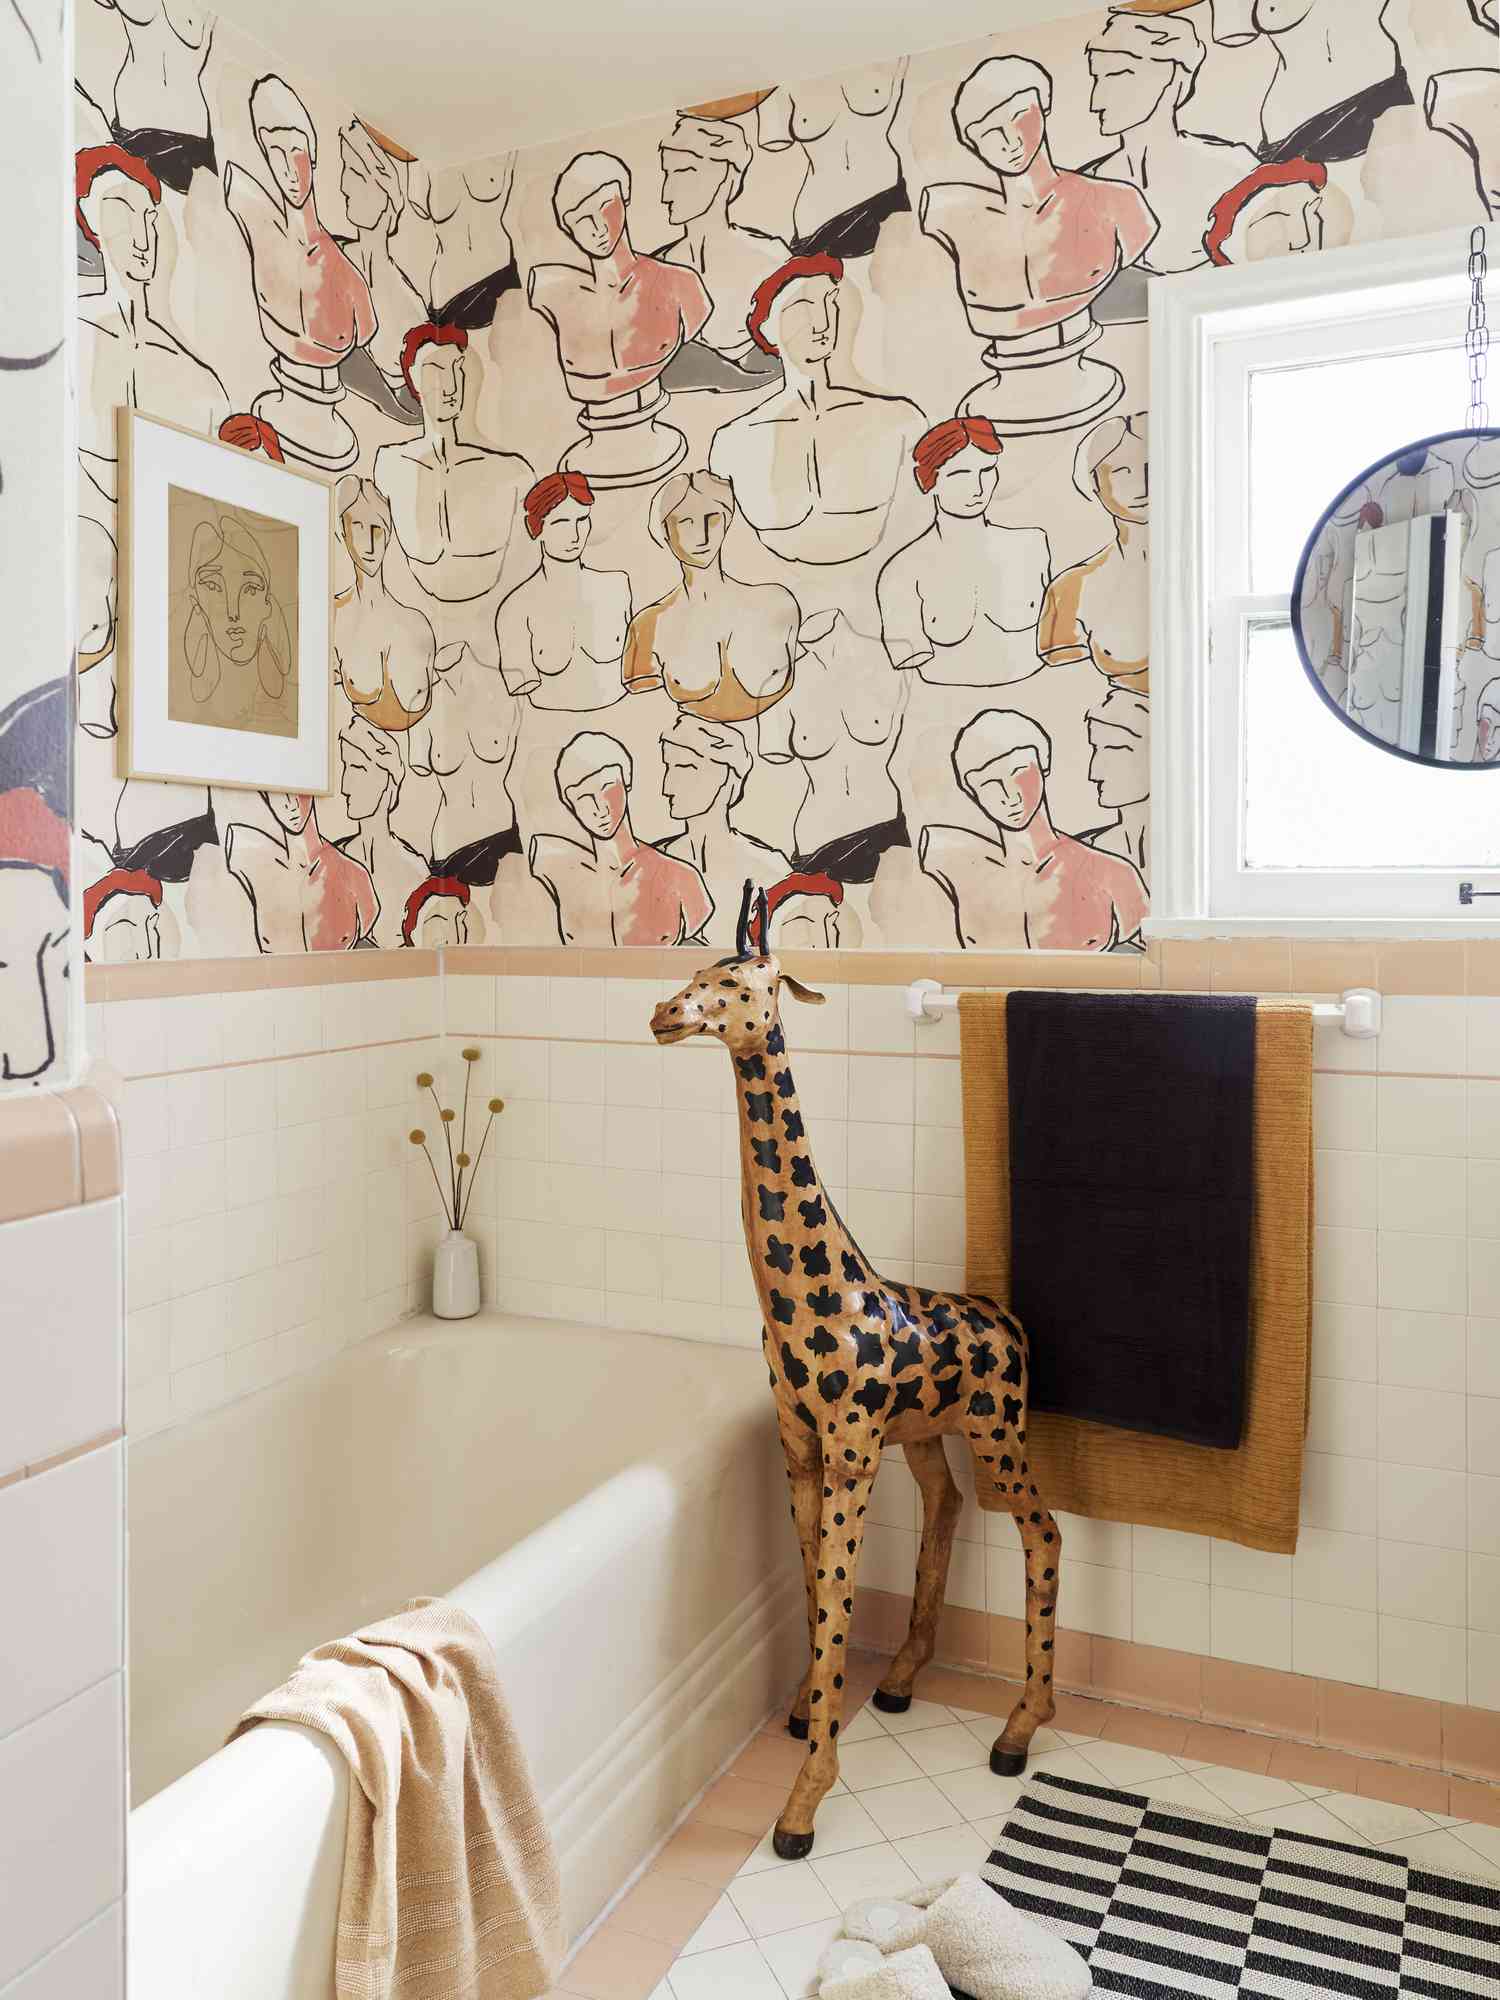 Une salle de bain est recouverte d'une peinture murale composée de bustes classiques dans des couleurs nues comme le pêche et le marron